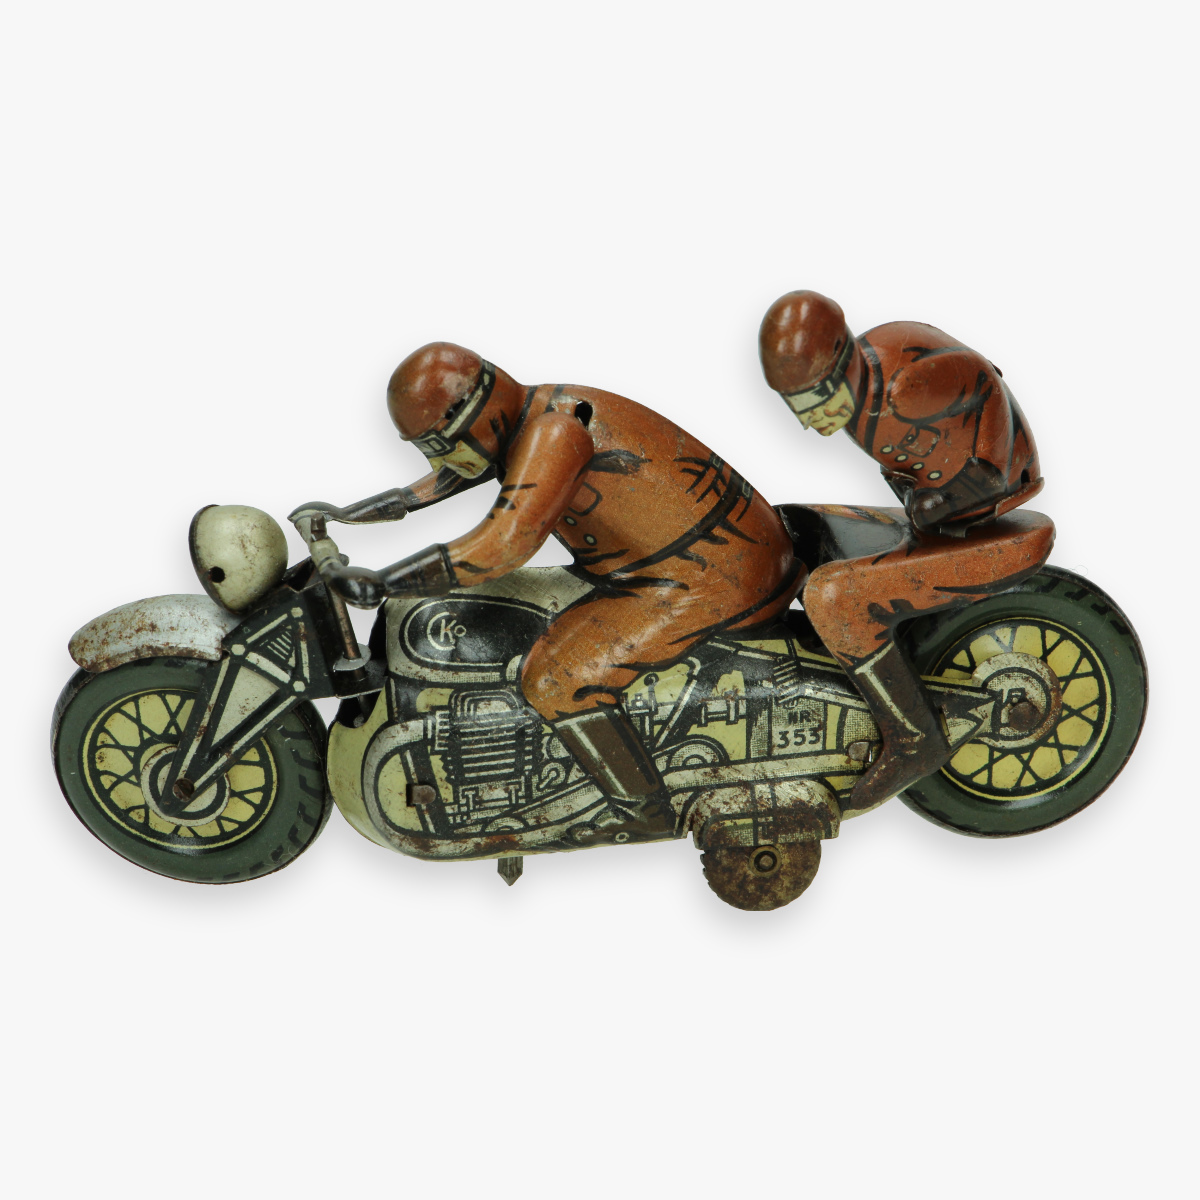 Afbeeldingen van kellerman sozuis cko jaren 30 tin toy motorcycle nr 353 military zeer zeldzaam